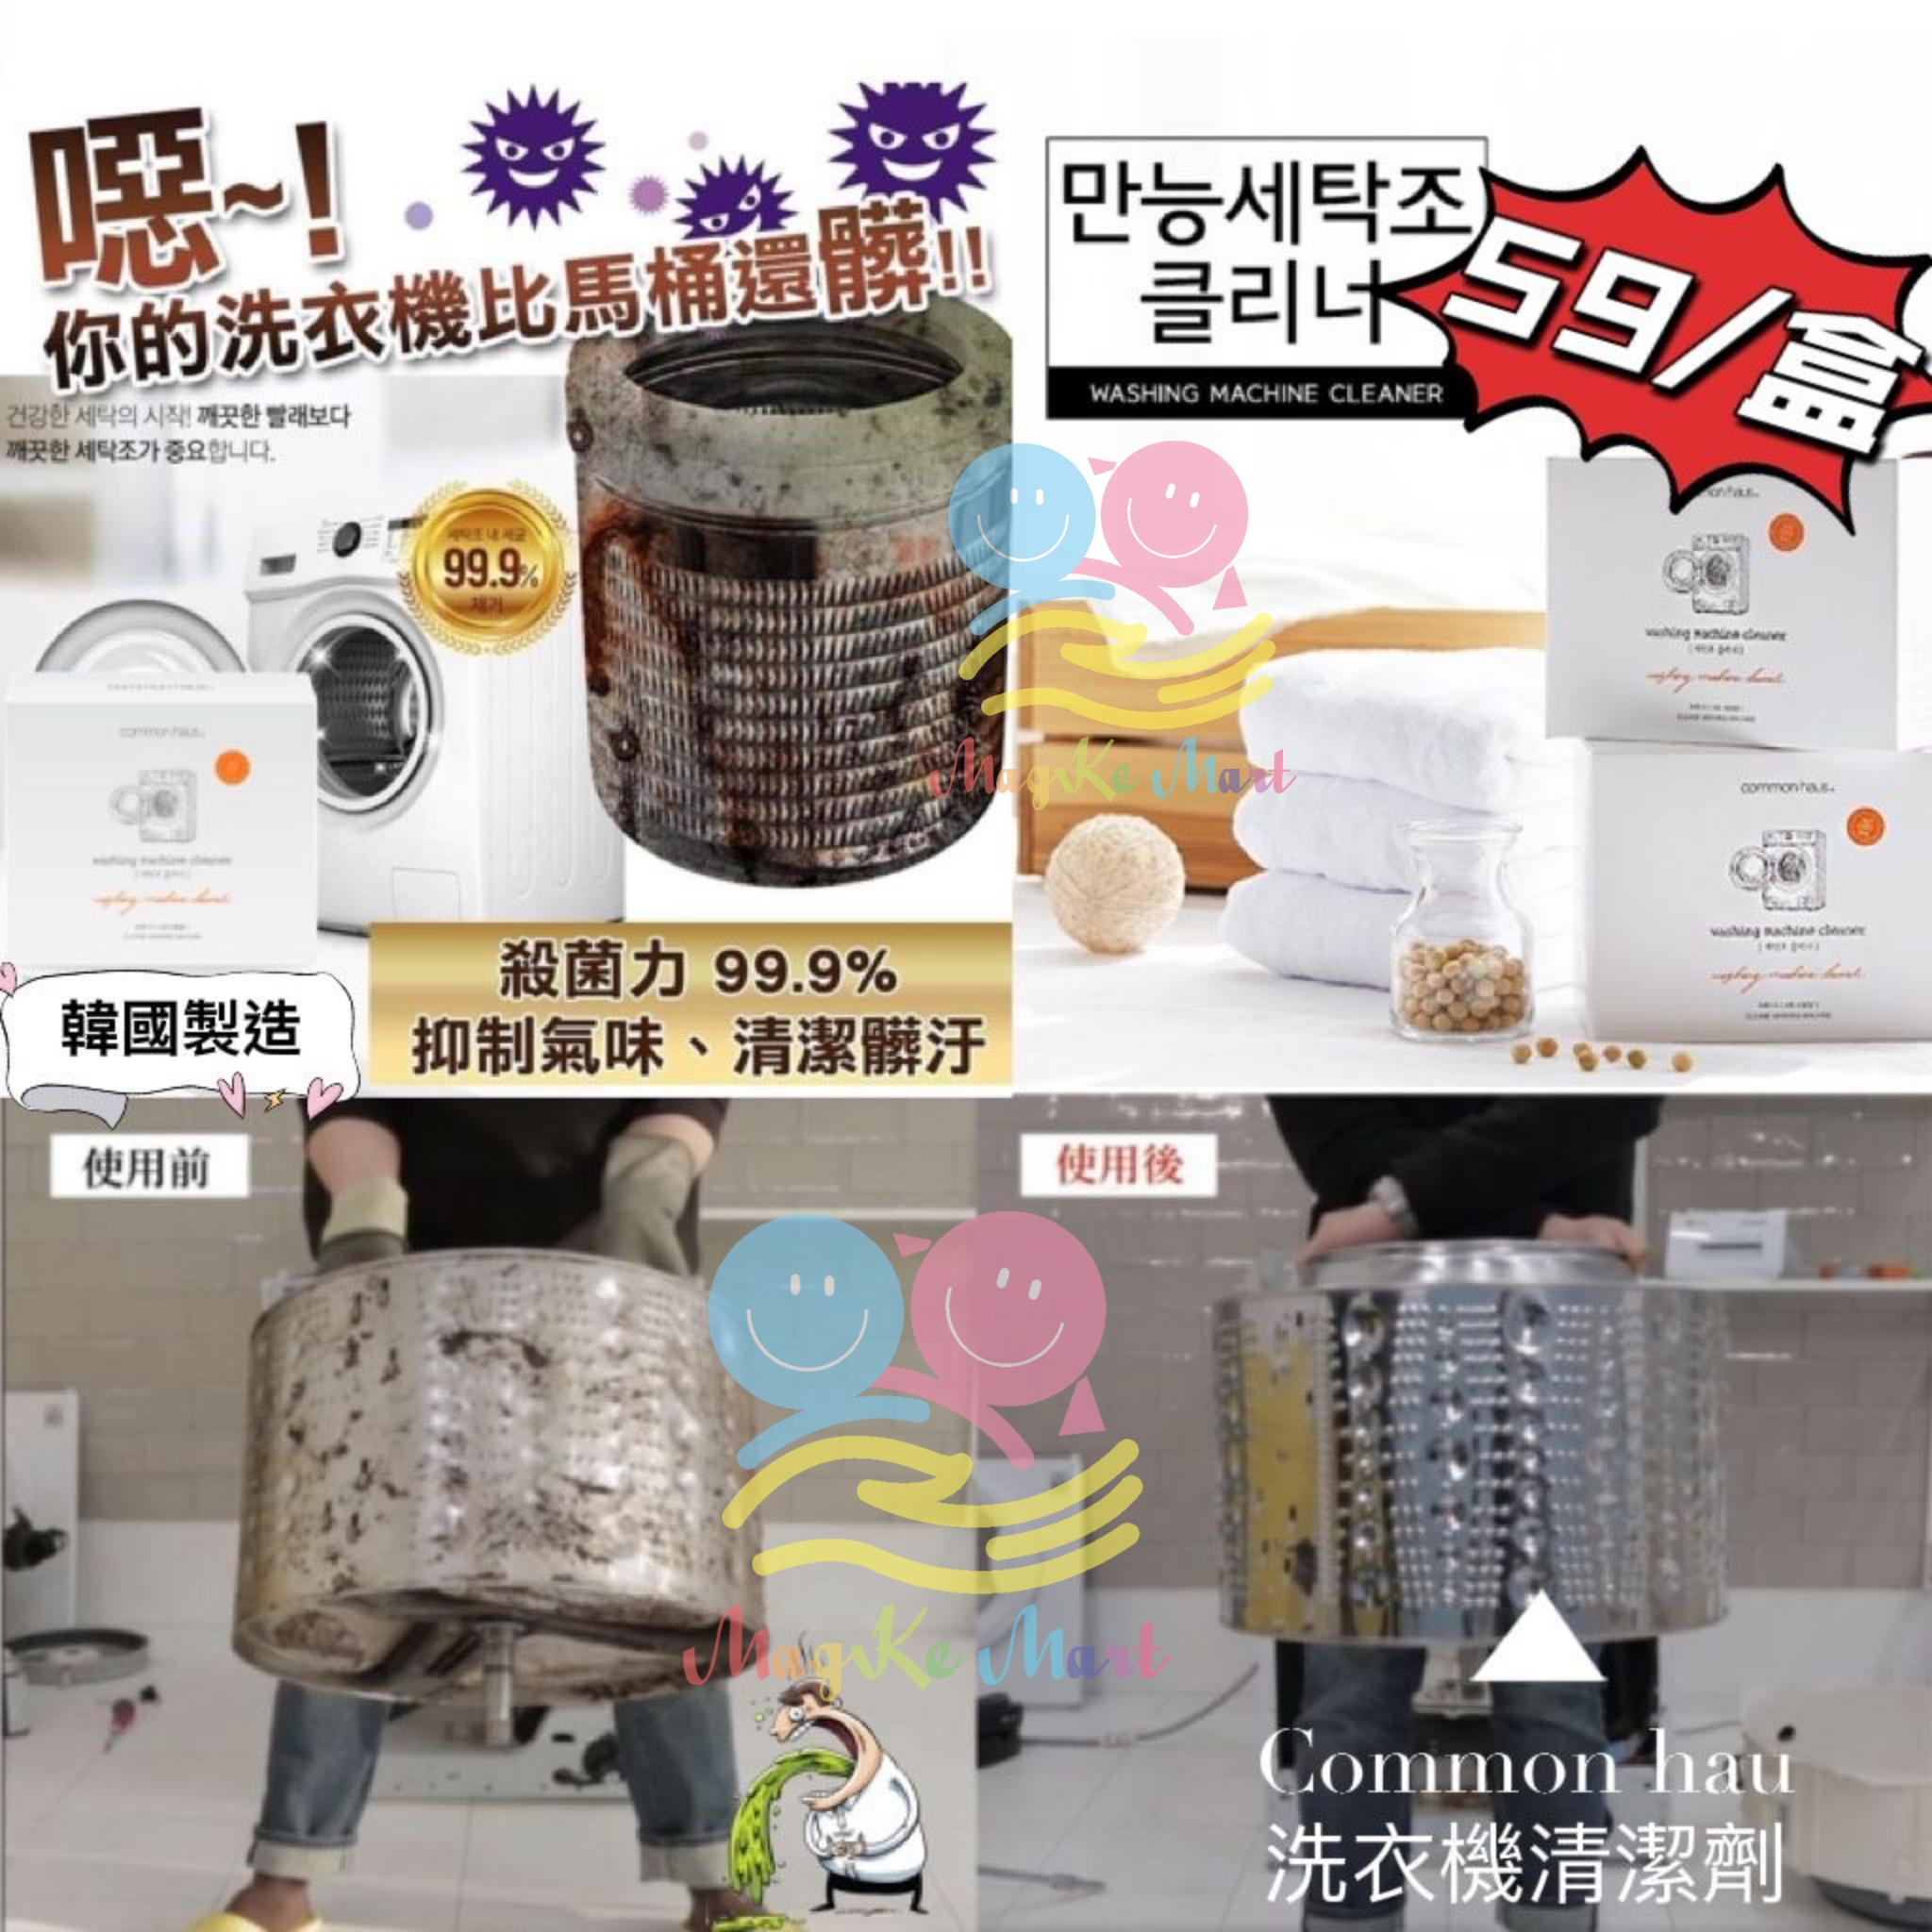 韓國 common hau 洗衣機清潔劑 640g (1盒4包)